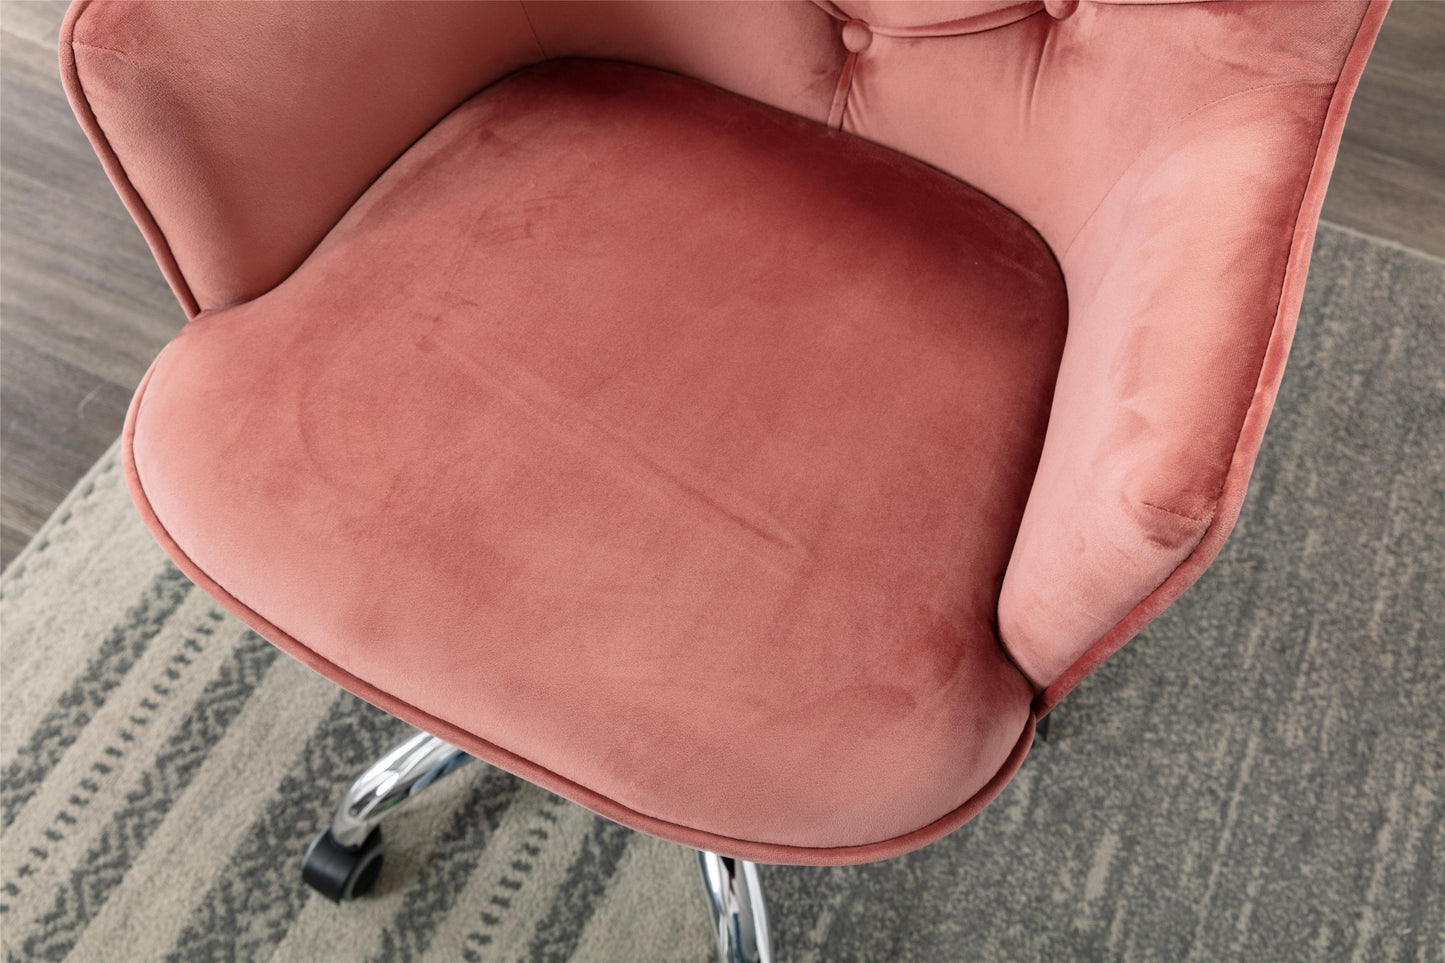 Velvet Swivel Shell Chair for Living Room, Office chair, Modern Leisure Arm Chair Bean red